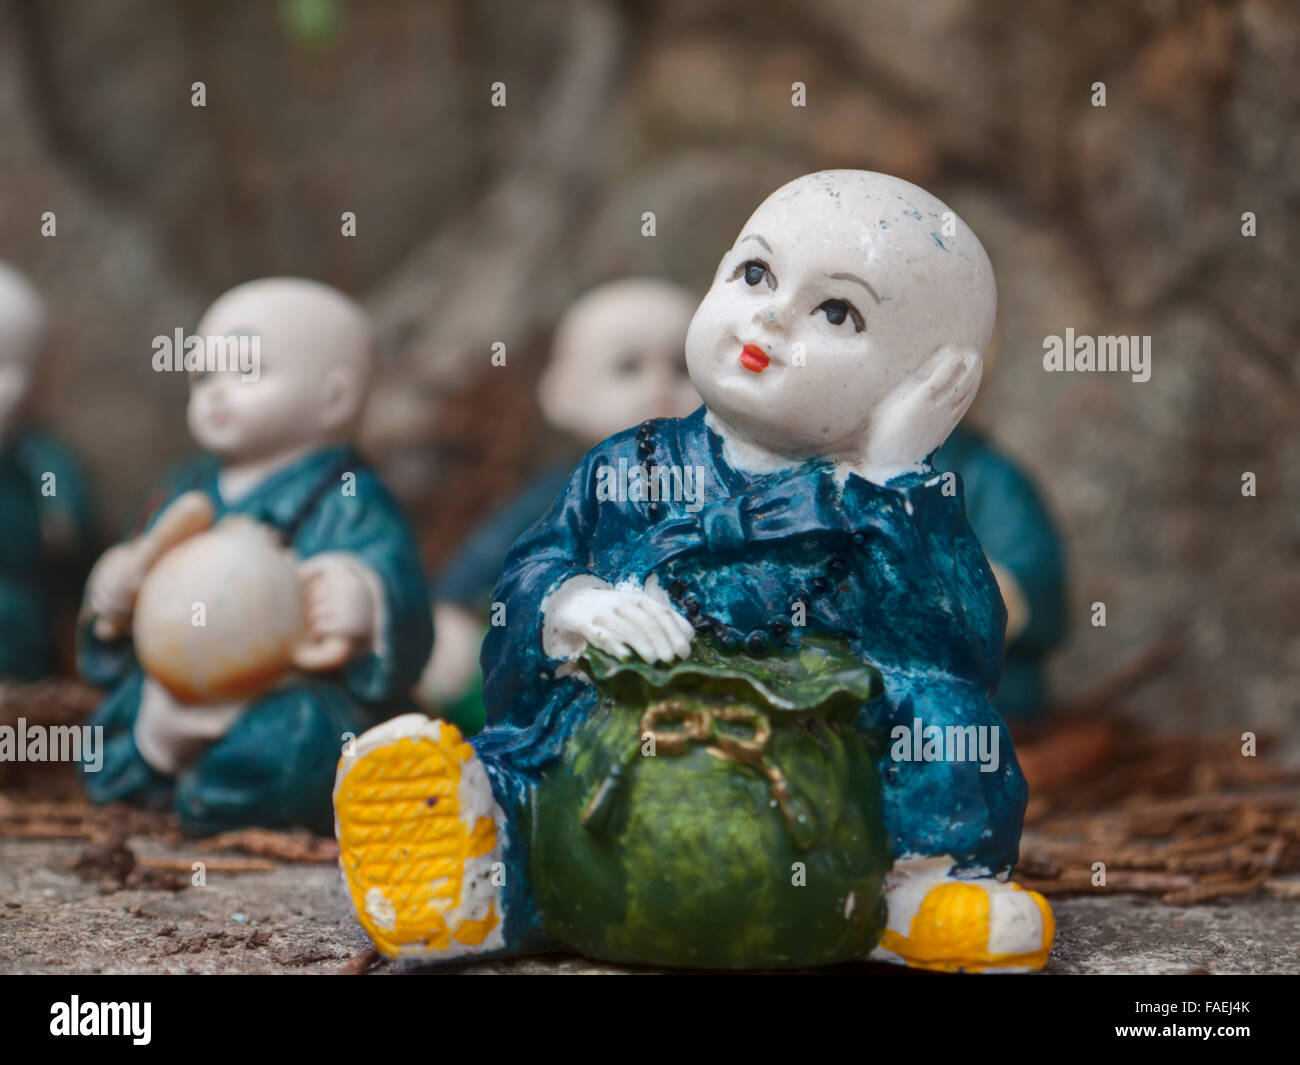 Little monk figurines Stock Photo